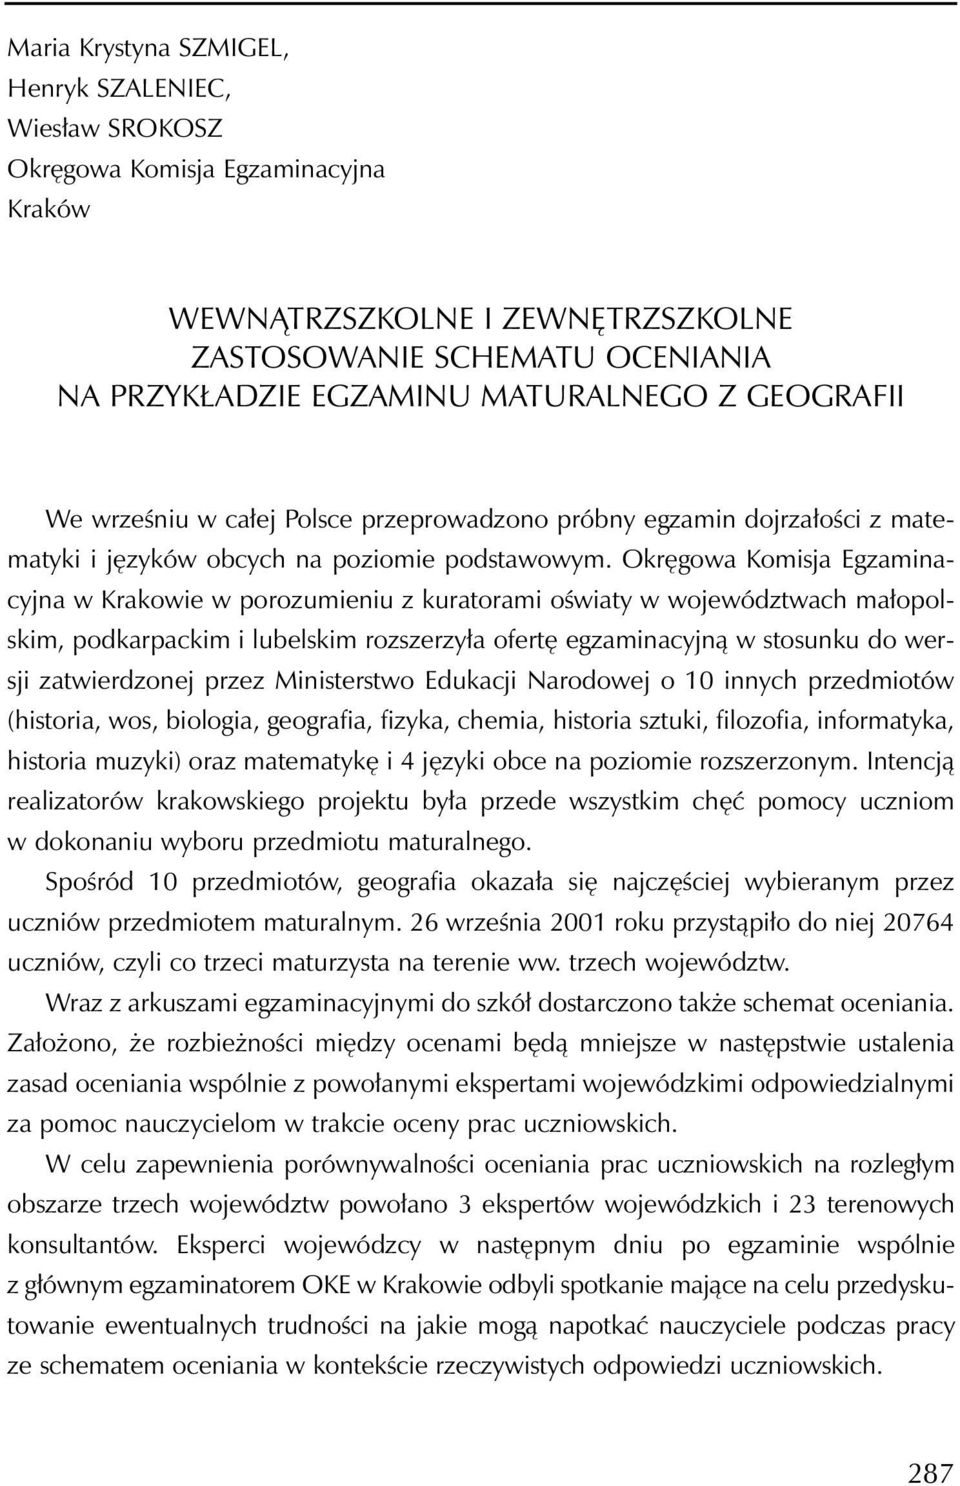 Okręgowa Komisja Egzaminacyjna w Krakowie w porozumieniu z kuratorami oświaty w województwach małopolskim, podkarpackim i lubelskim rozszerzyła ofertę egzaminacyjną w stosunku do wersji zatwierdzonej